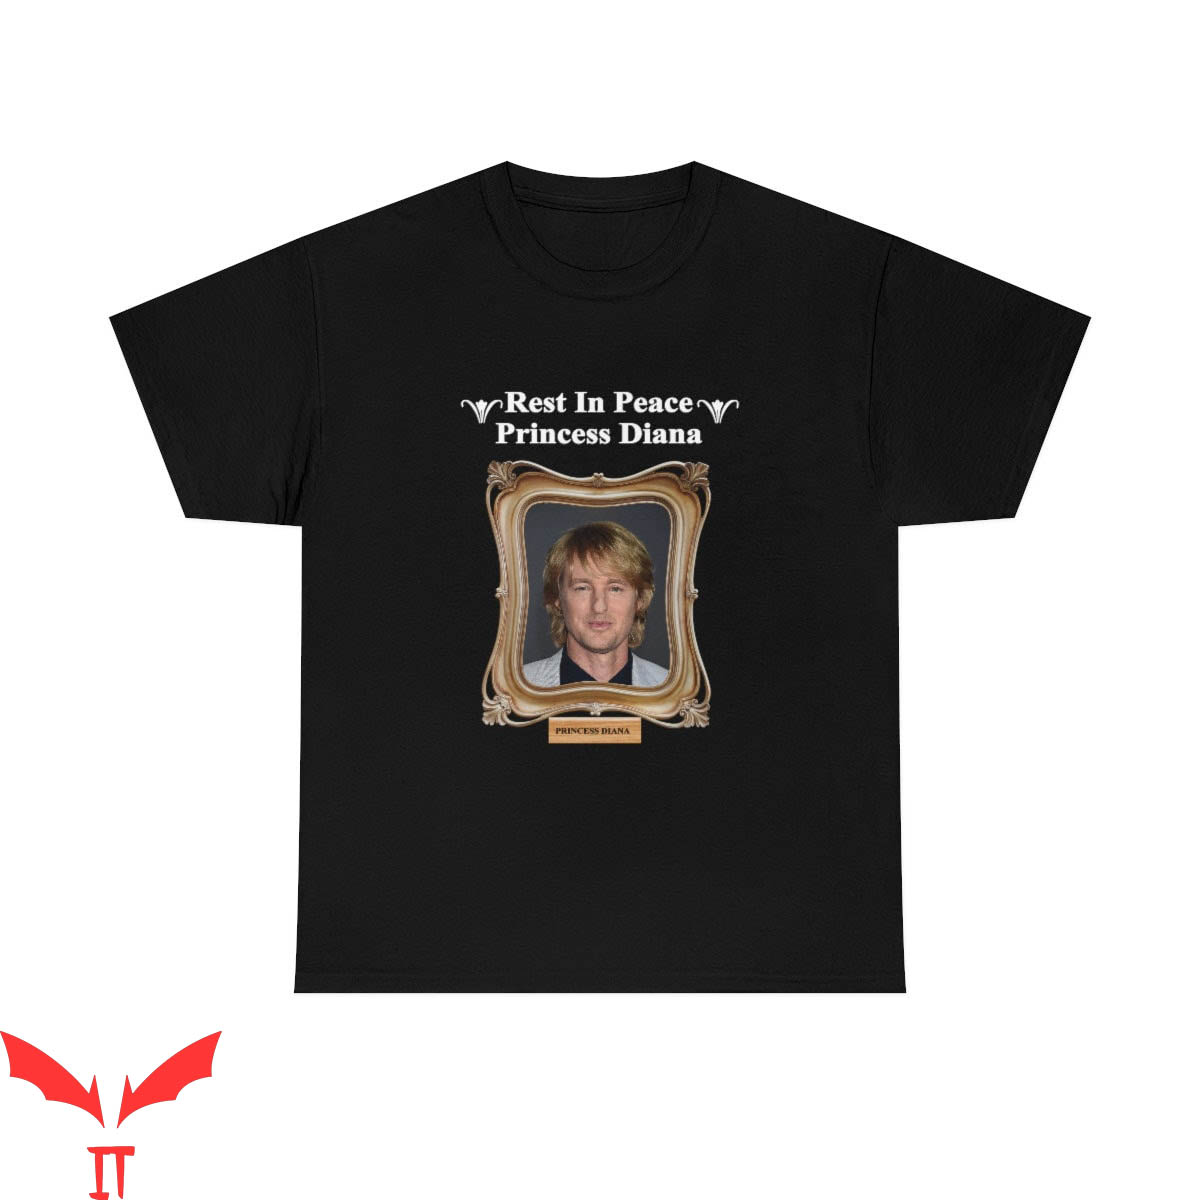 Princess Diana T-Shirt Rest In Peace Owen Wilson Shirt